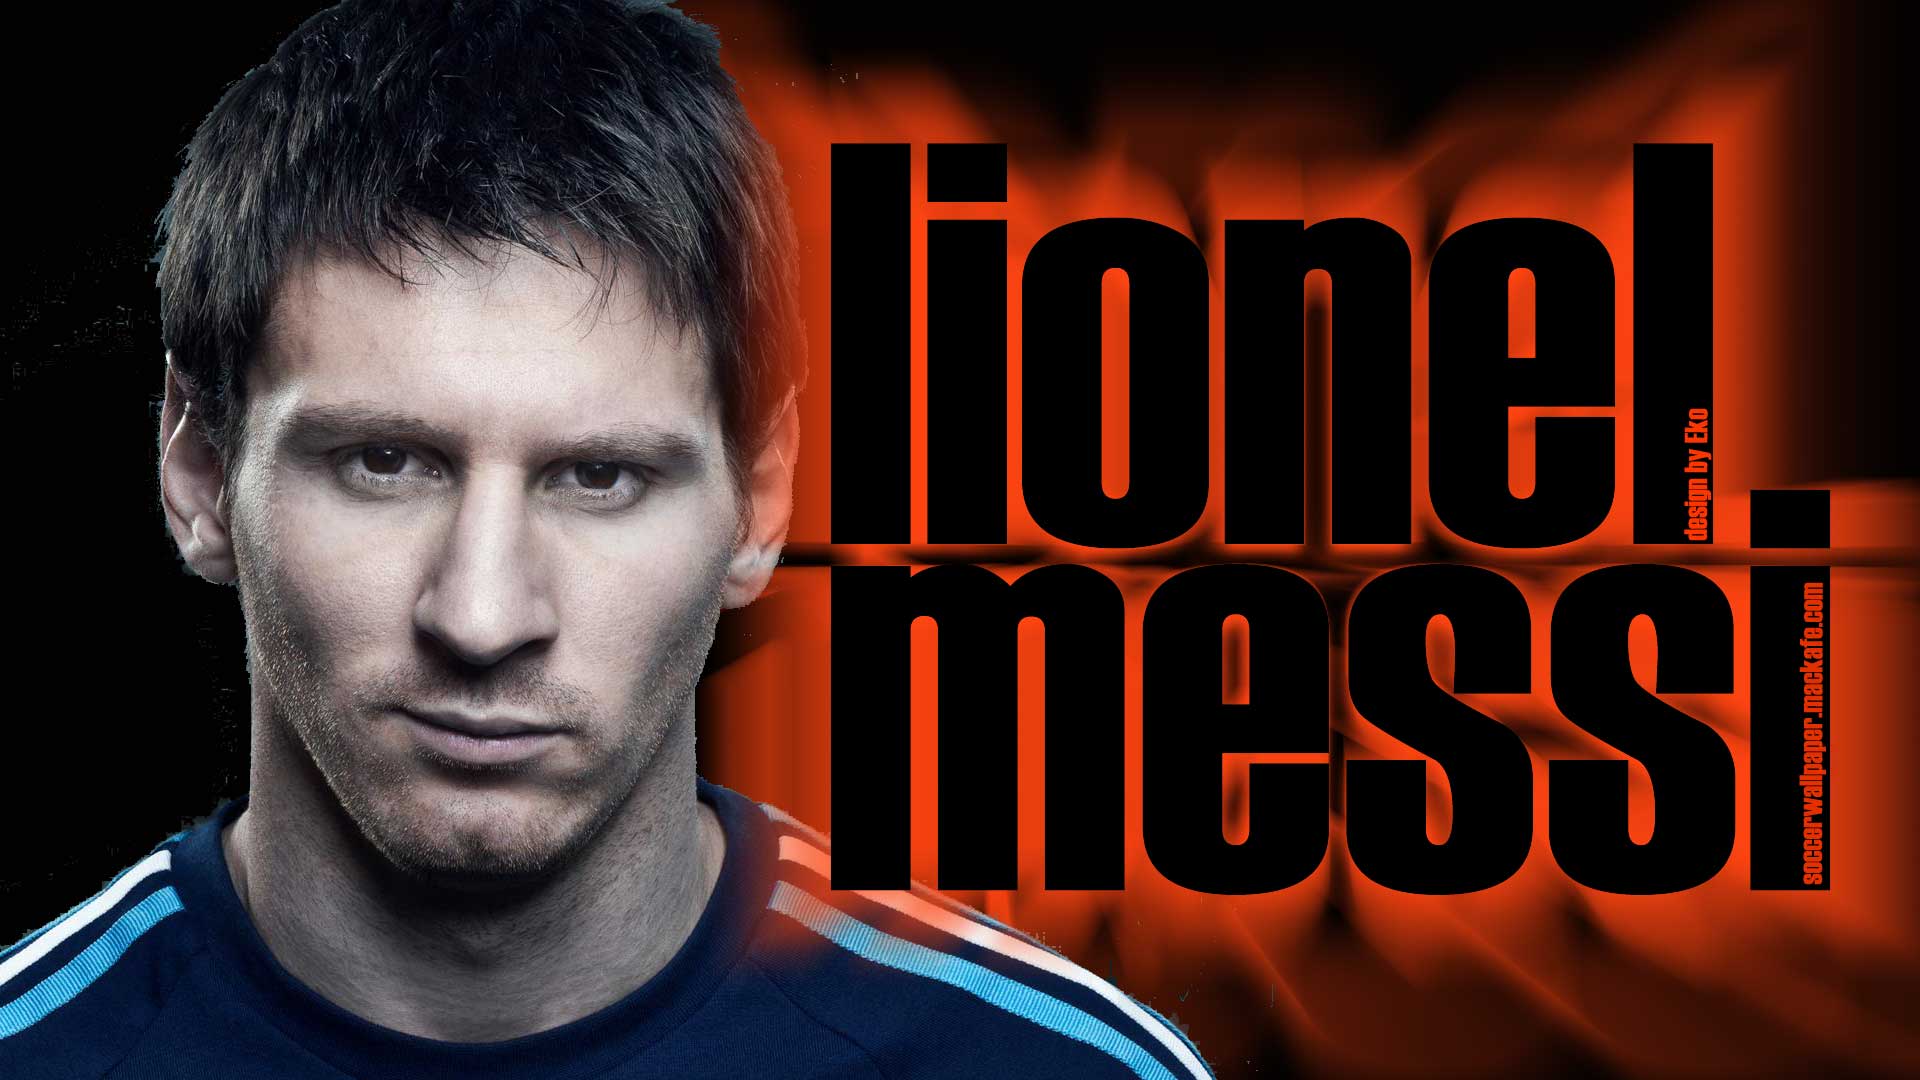 Lionel Messi Top Wallpaper Football HD